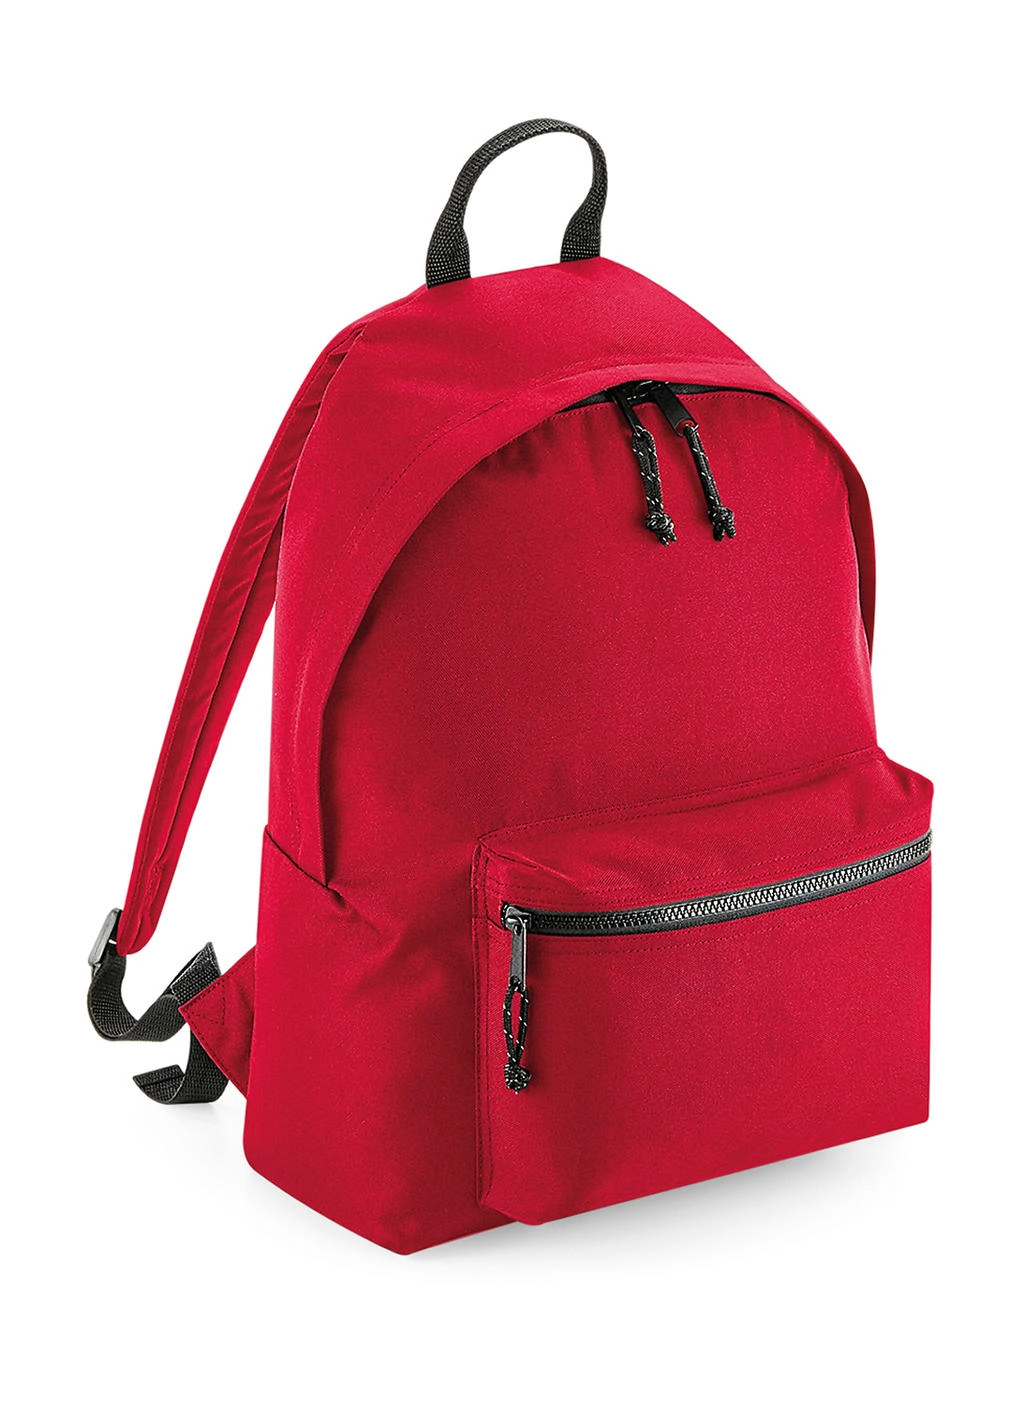 Recycled Backpack zum Besticken und Bedrucken in der Farbe Classic Red mit Ihren Logo, Schriftzug oder Motiv.